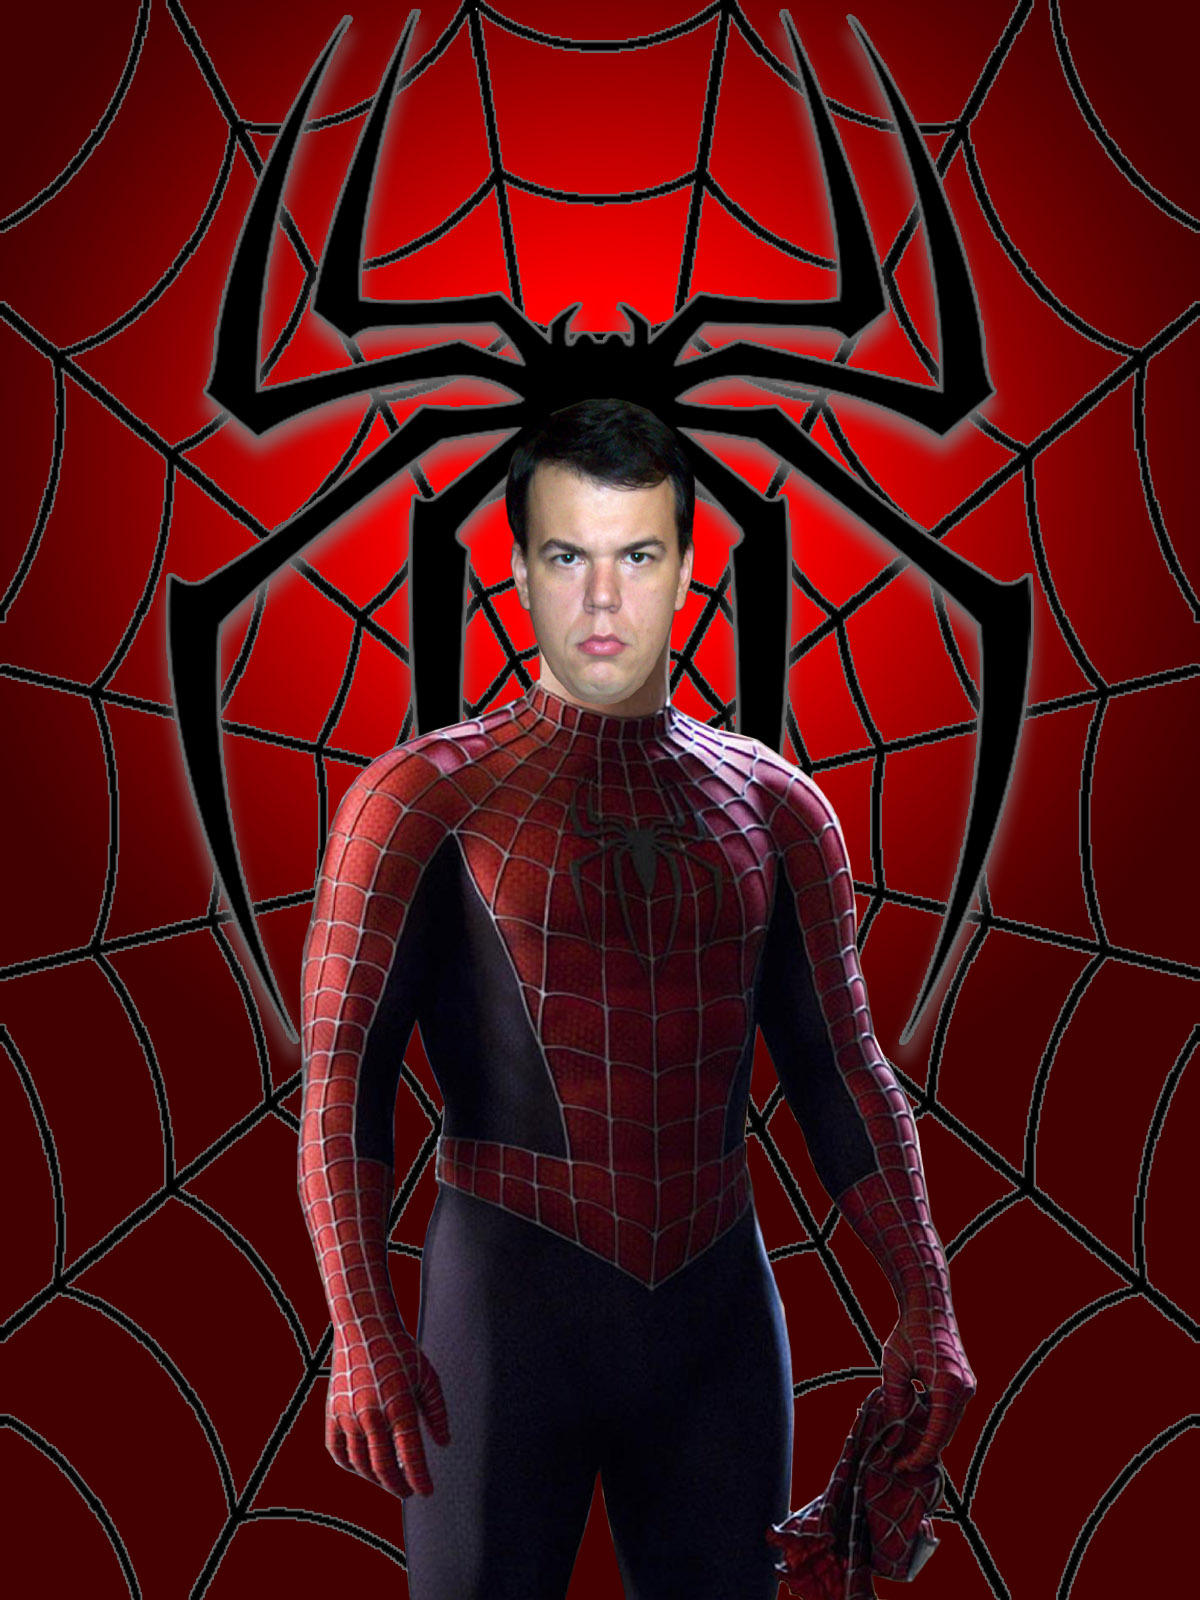 Spider-Man 2002-2007 - Remake Poster-001 by Super-TyBone82 on DeviantArt